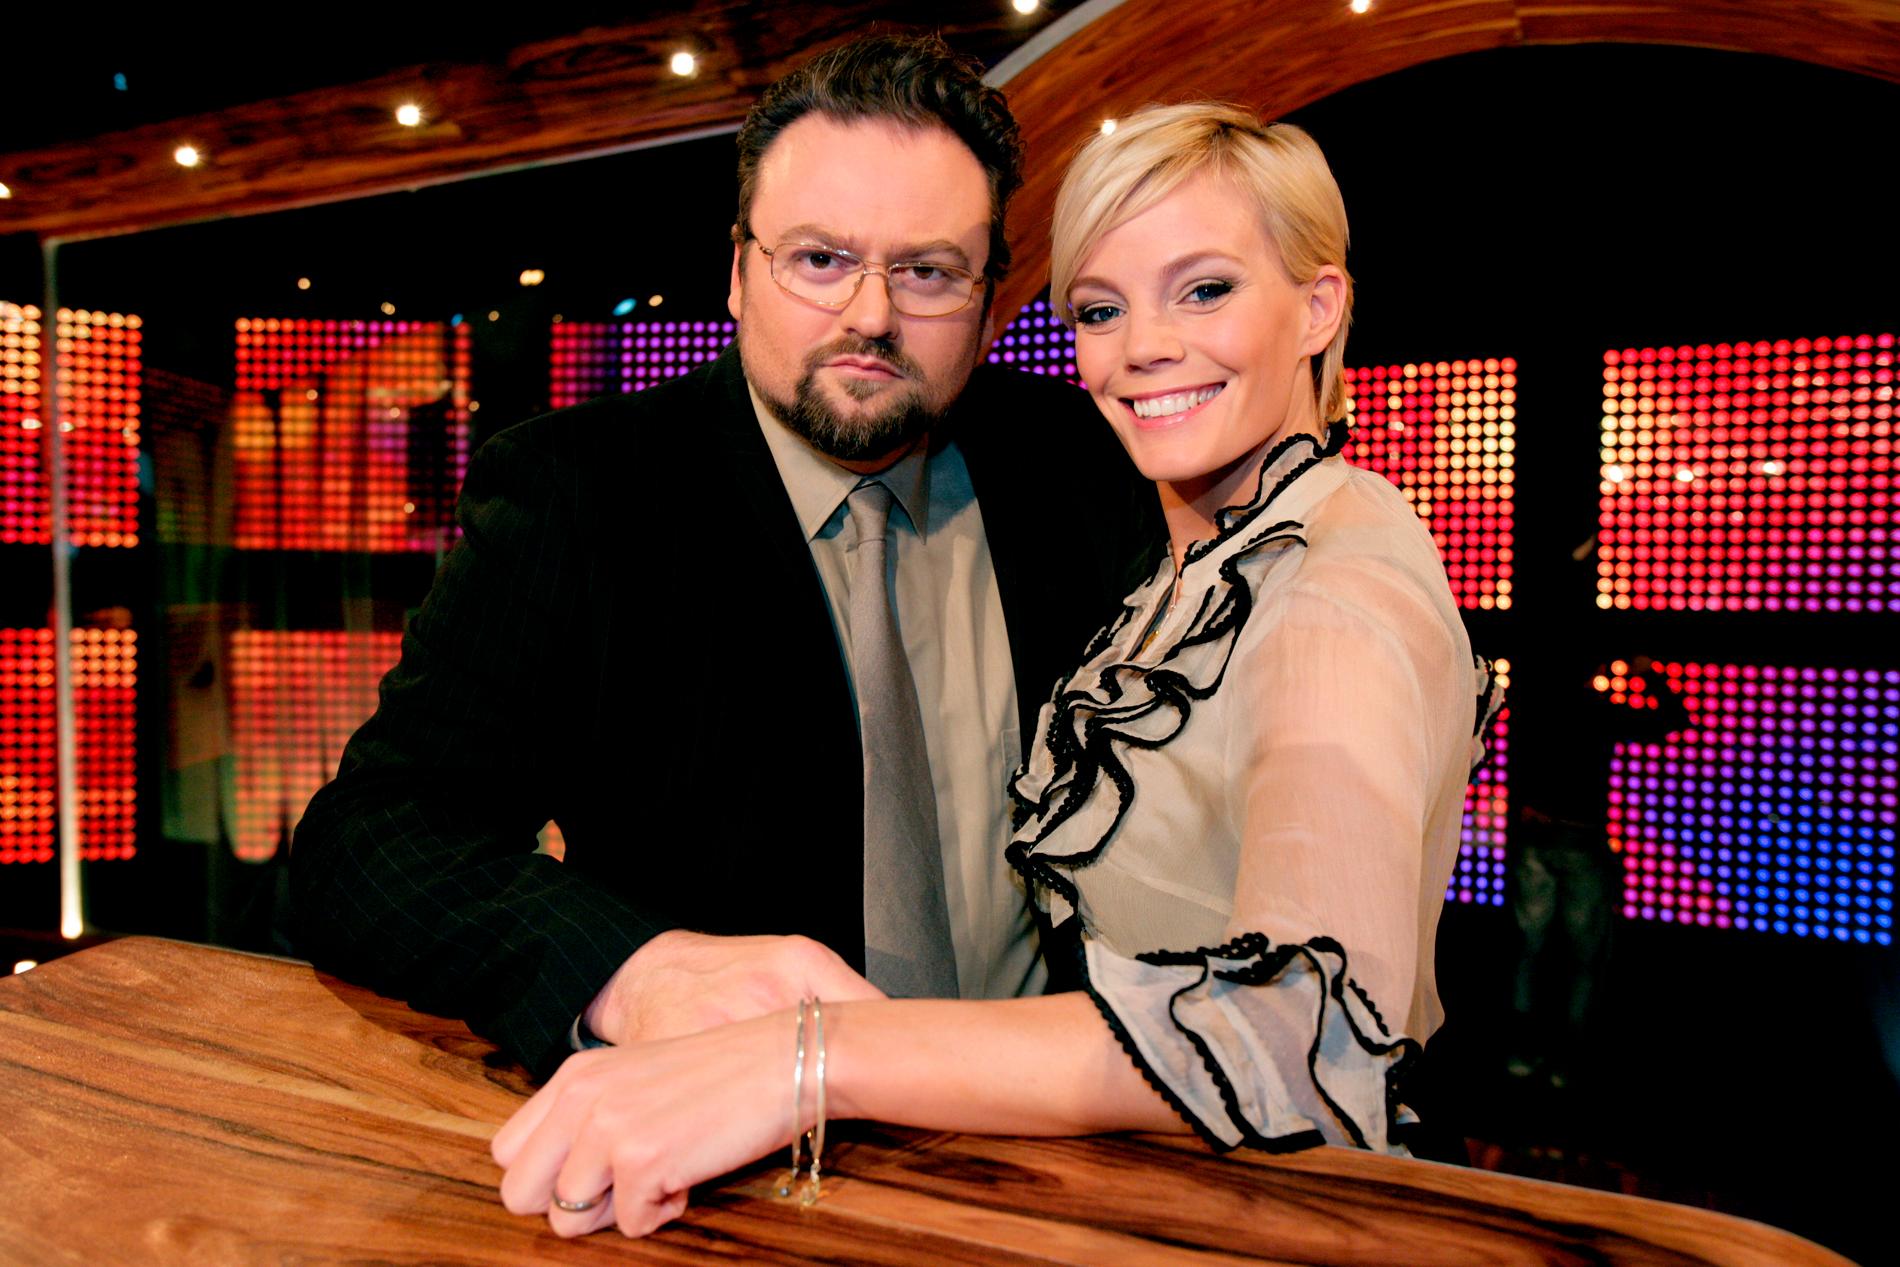 Underhållningsprogrammet ”Pokerfejs” började sändas i TV4 våren 2007. Adam Alsing var programledare tillsammans med Gry Forssell.